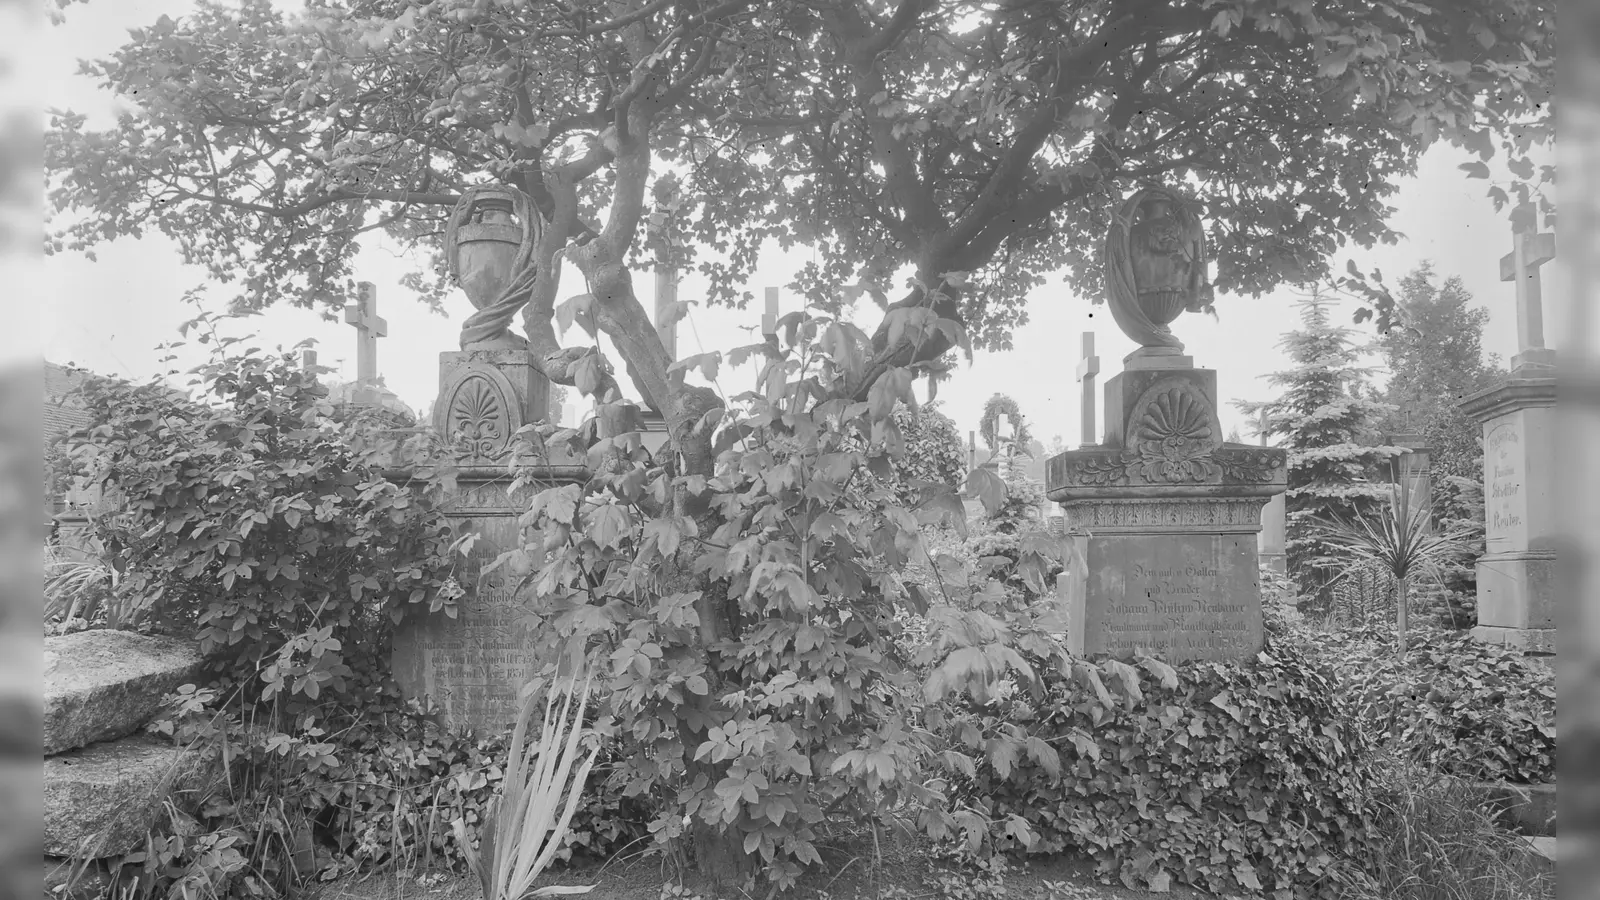 Dicht bewachsen war der Stadtfriedhof in den 1920er Jahren, als diese Fotografie entstand. Die Zeitung berichtet von Kindern, die einst auf dem Gräberfeld tröstende „Auferstehungslieder“ sangen. (Repro: Alexander Biernoth)